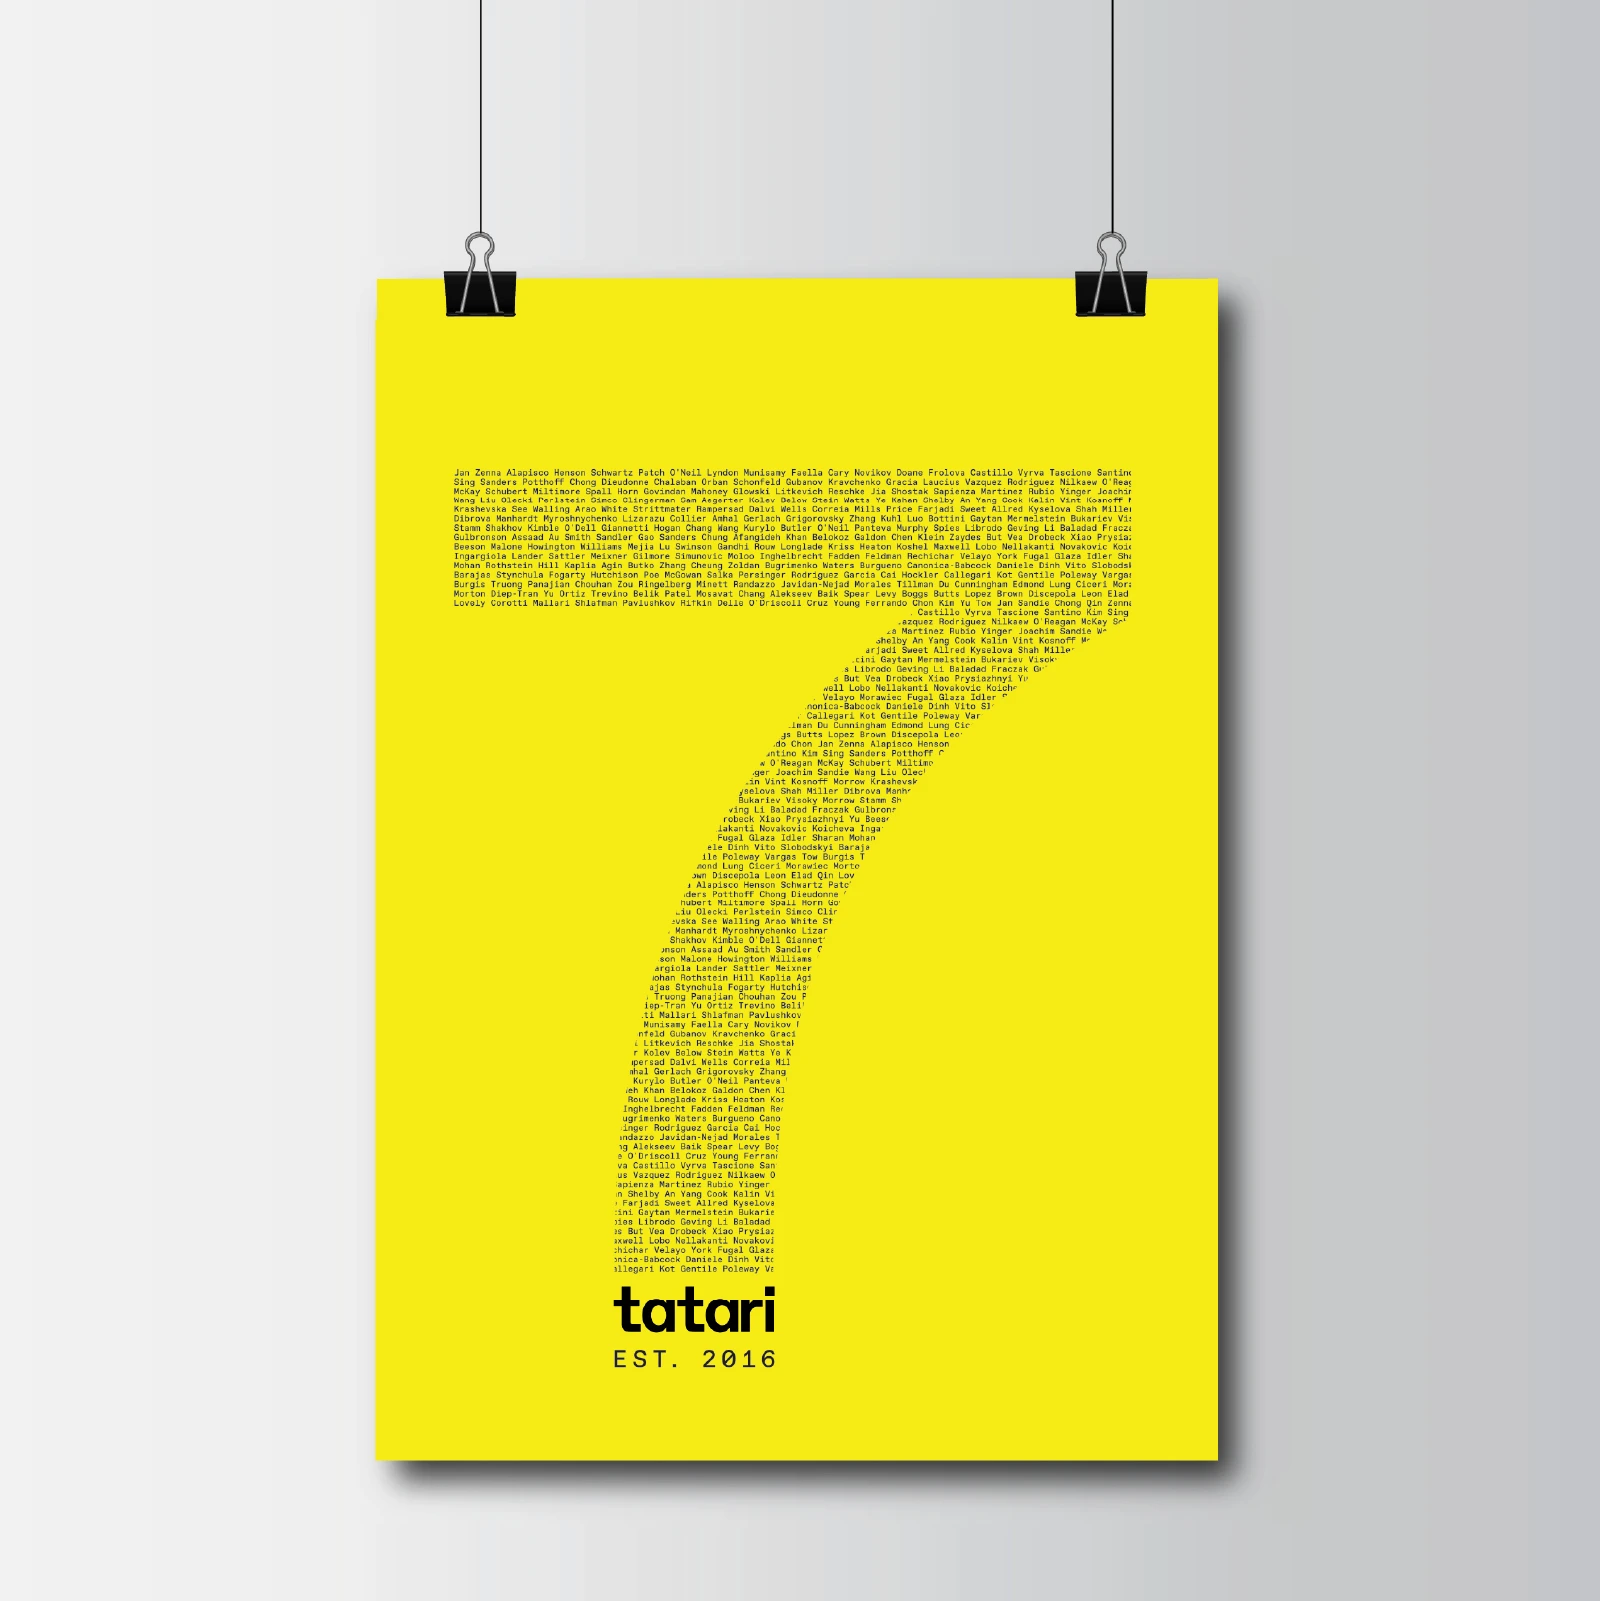 Tatari's 7-Year Anniversary